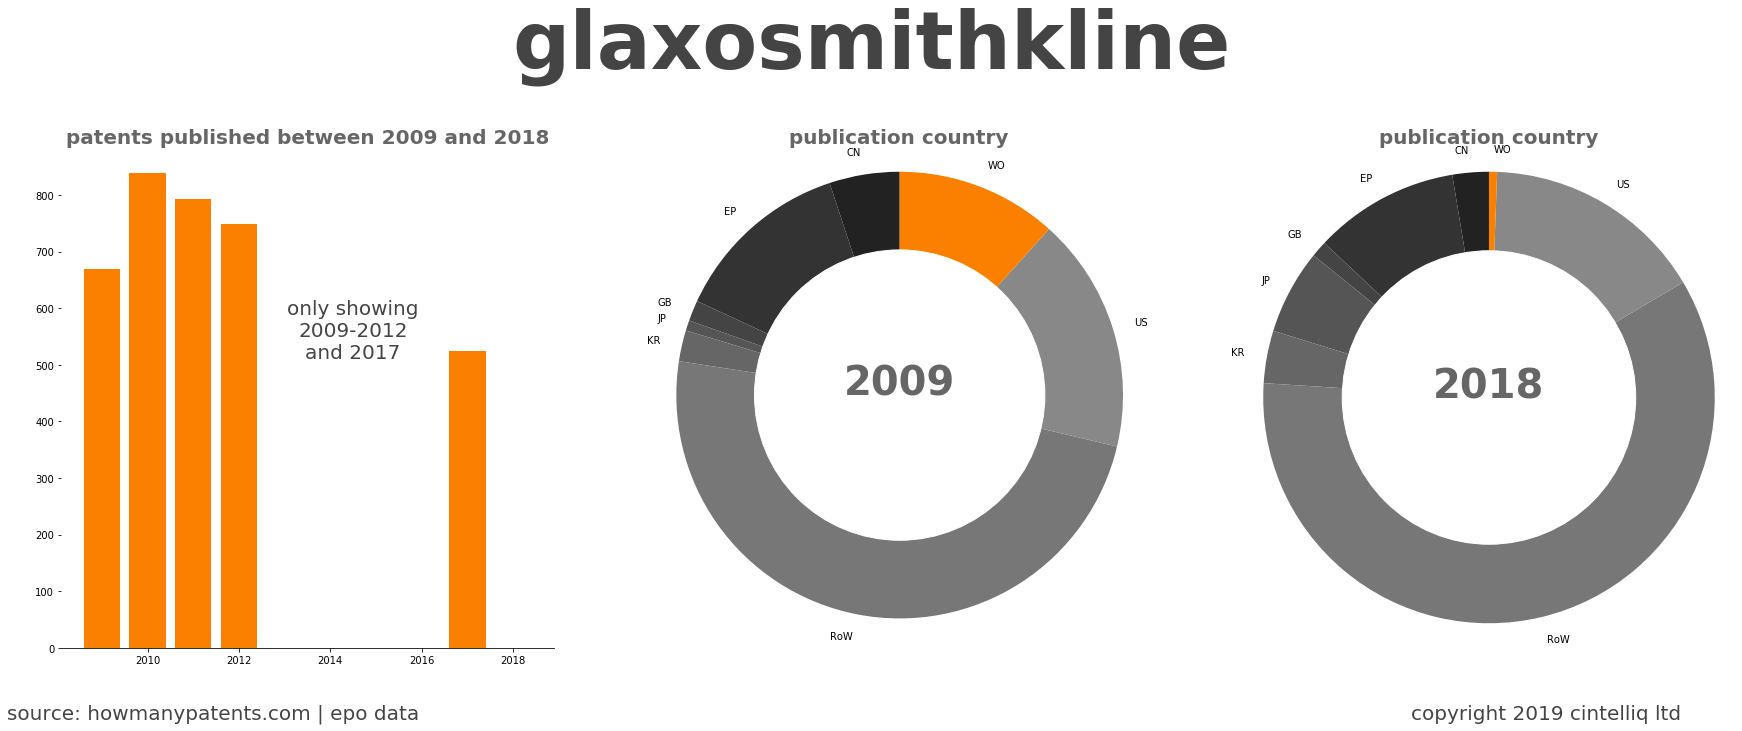 summary of patents for Glaxosmithkline